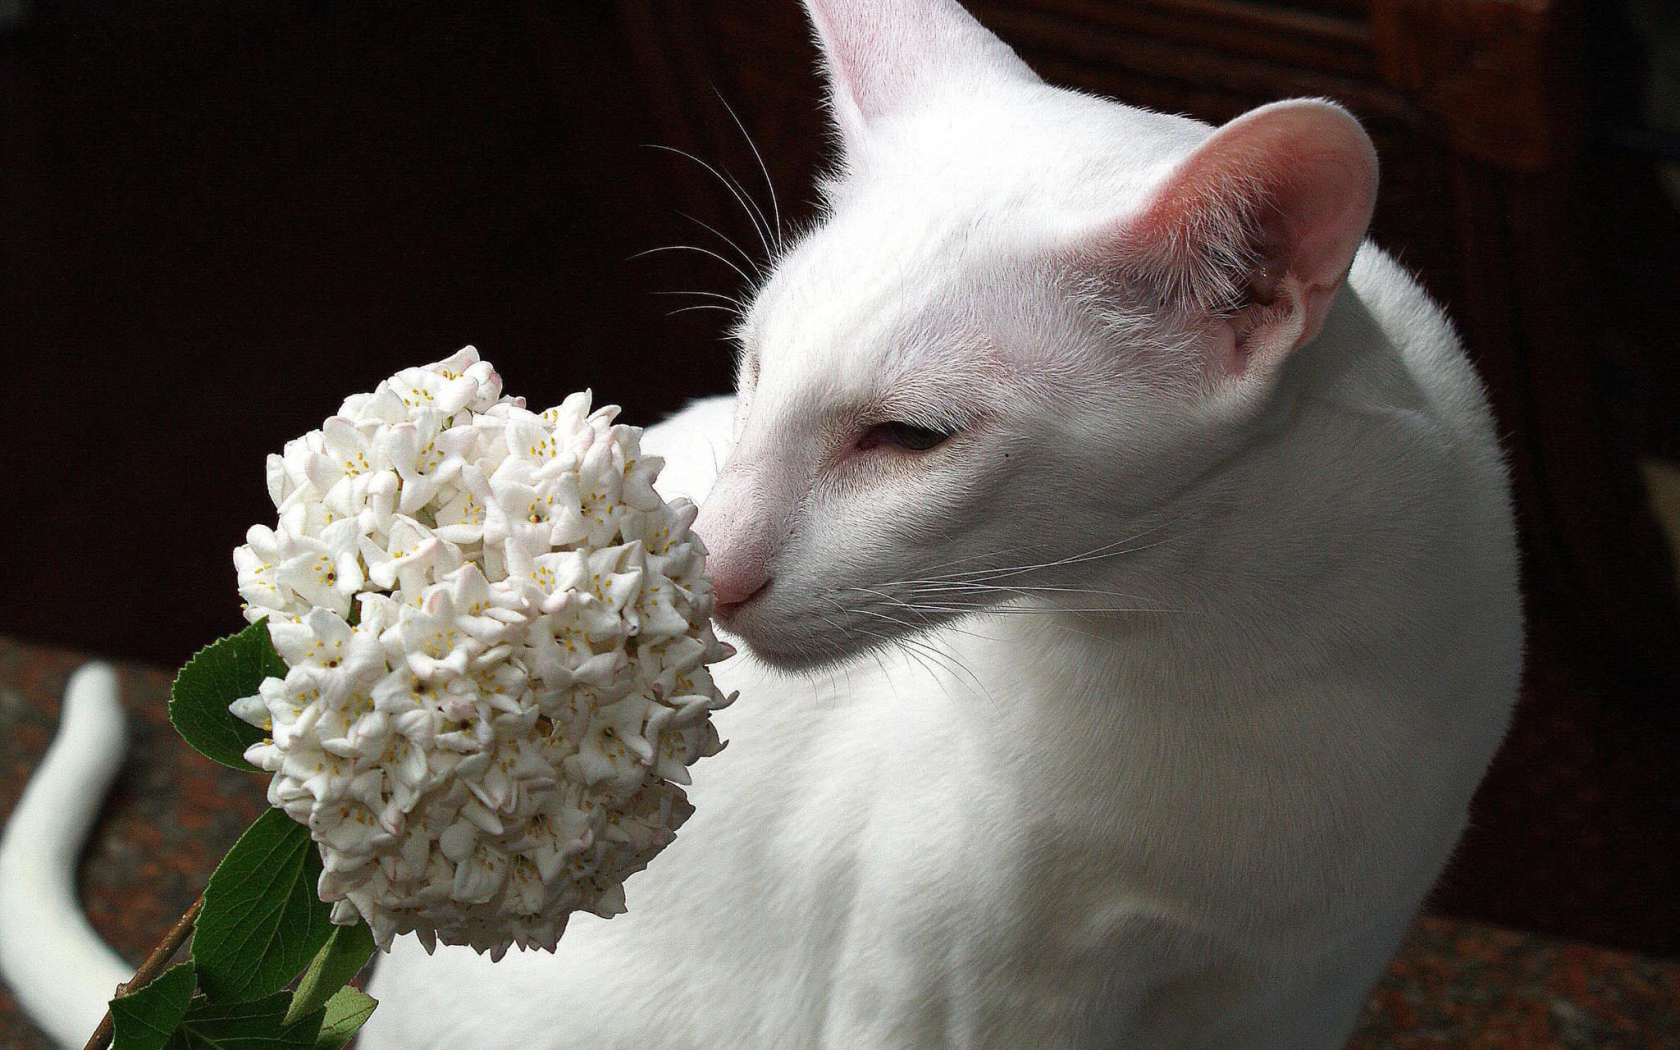 Белая ориентальная короткошерстная кошка